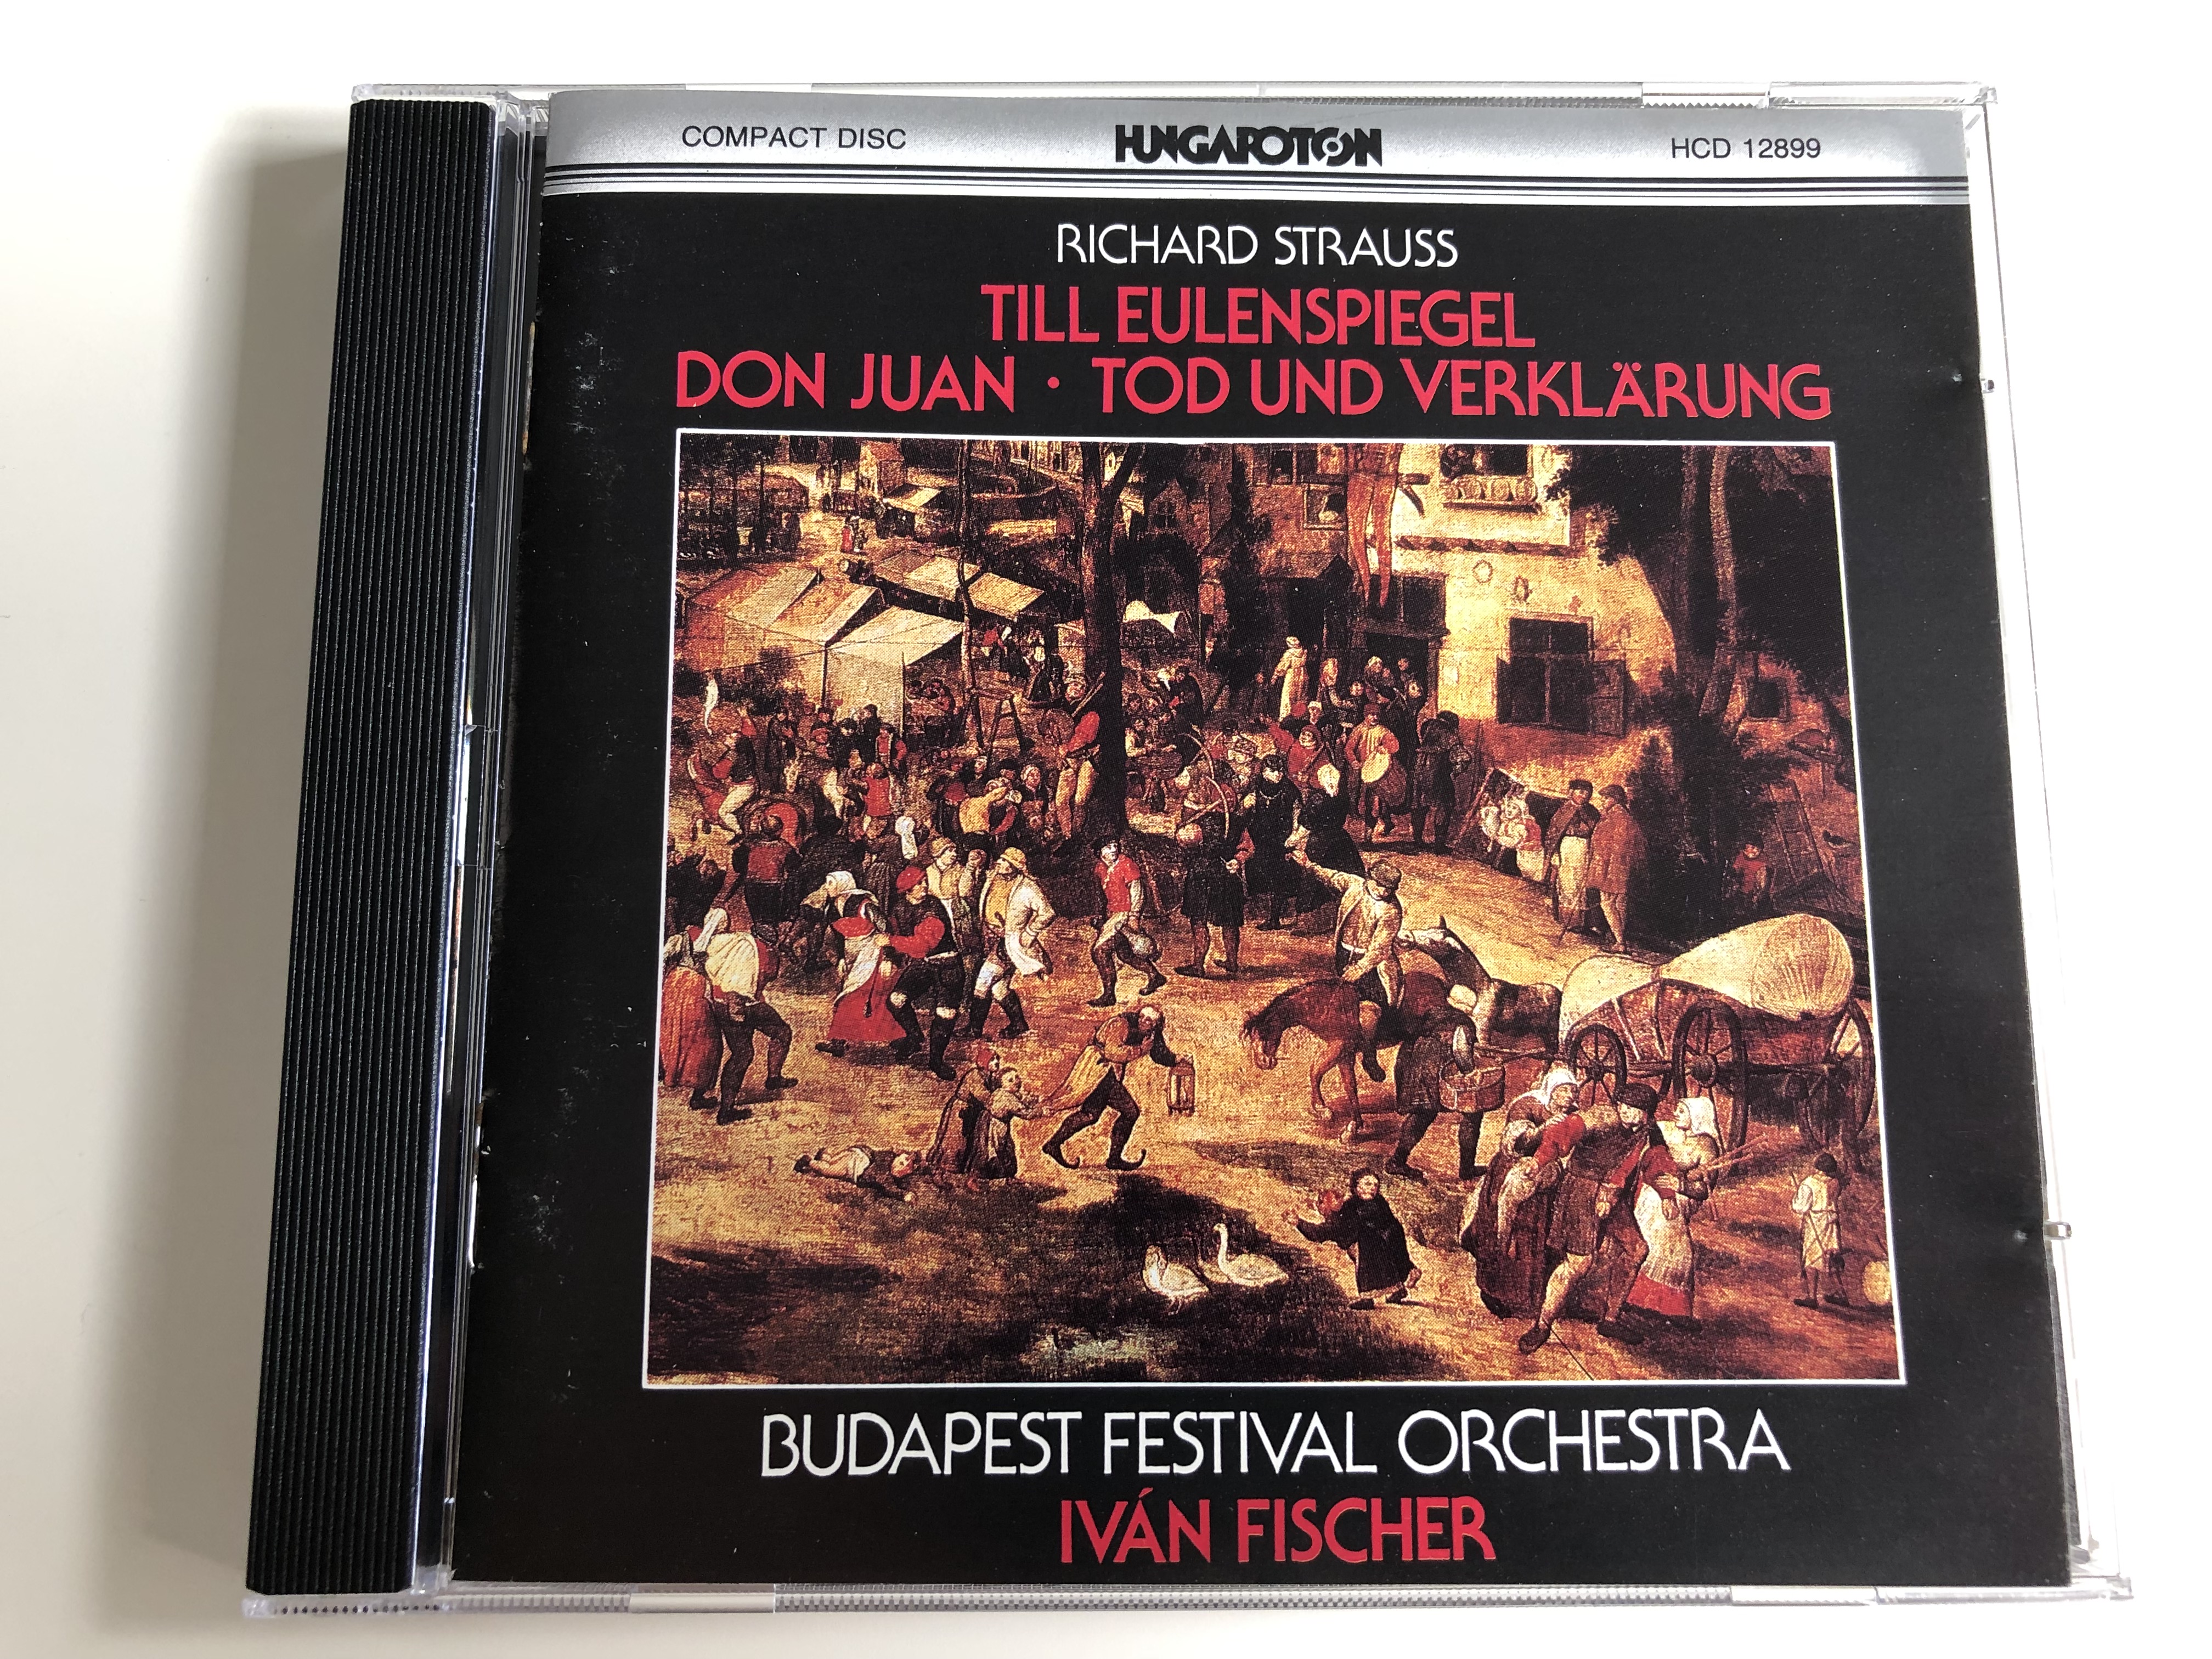 richard-strauss-till-eulenspiegel-don-juan-tod-und-verk-rung-budapest-festival-orchestra-conducted-by-iv-n-fischer-hungaroton-hcd-12899-audio-cd-1990-1-.jpg